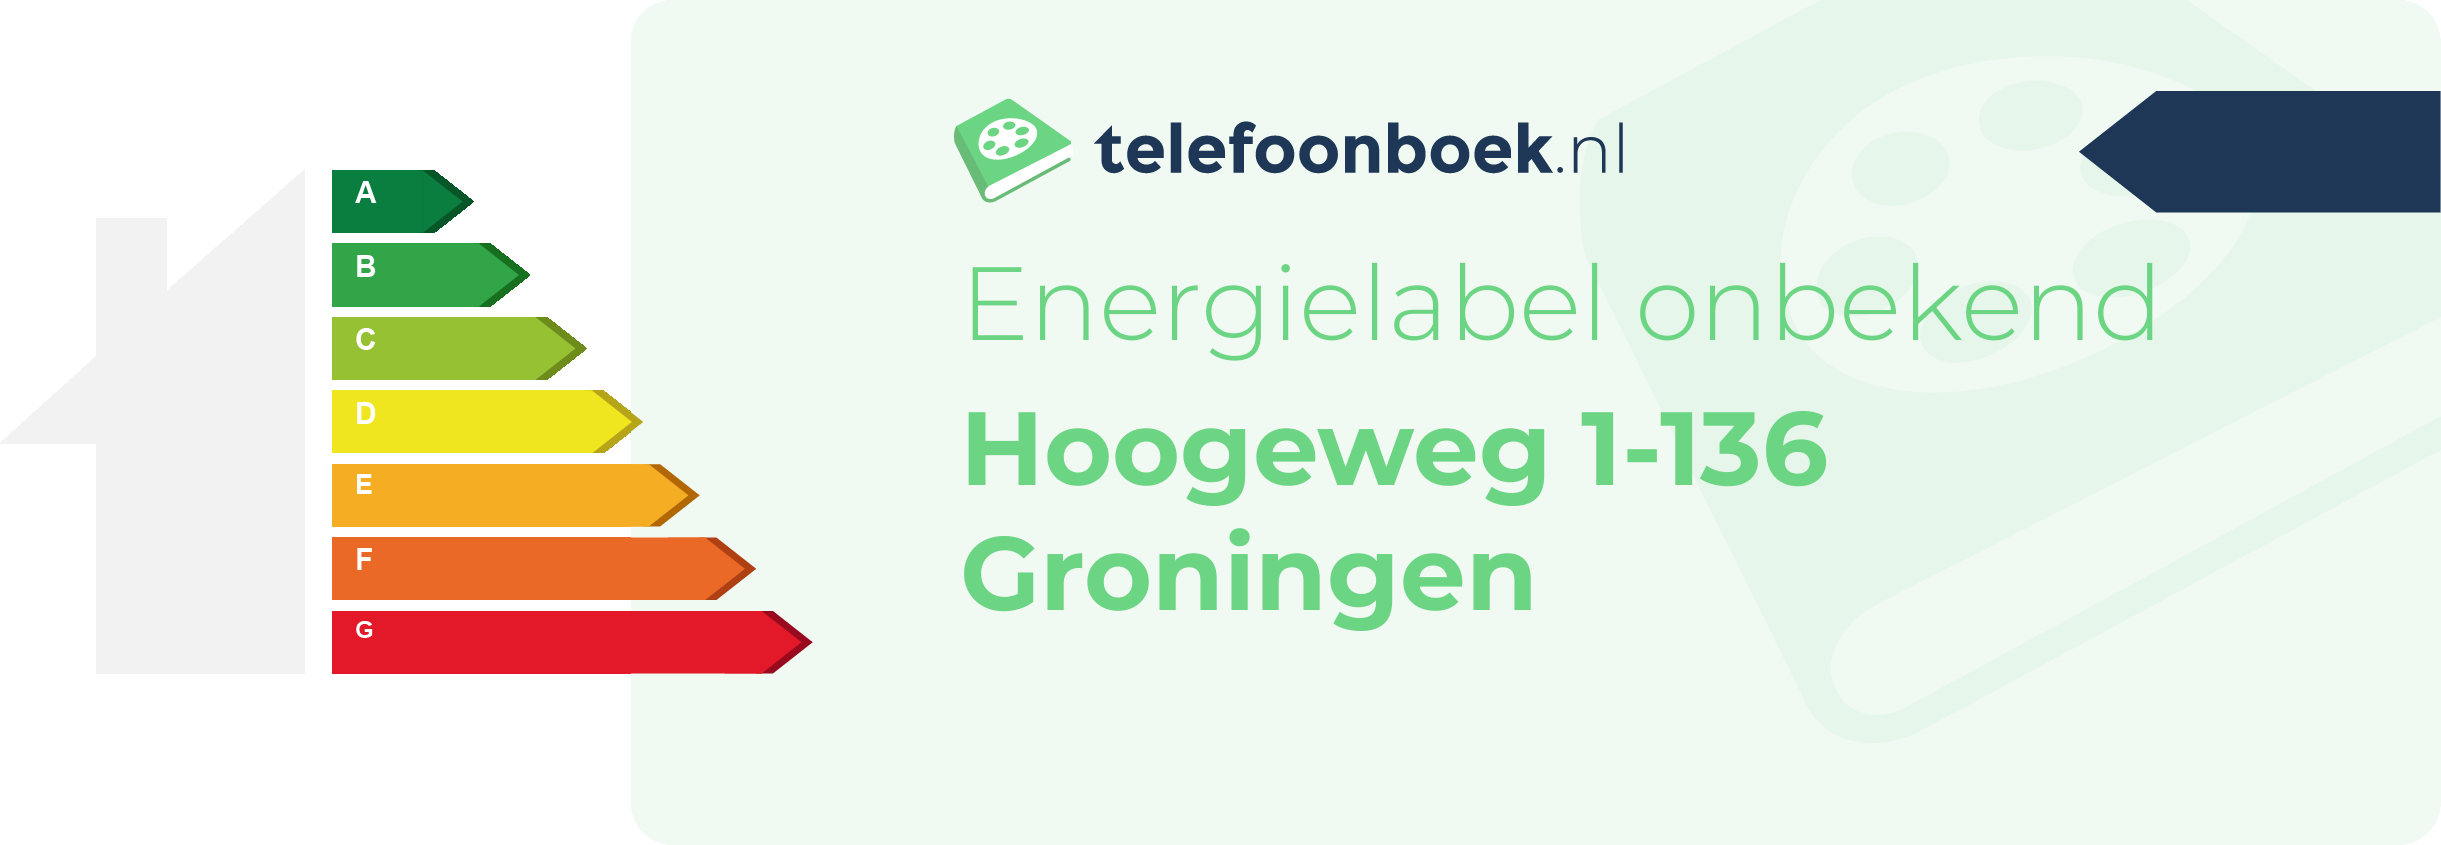 Energielabel Hoogeweg 1-136 Groningen